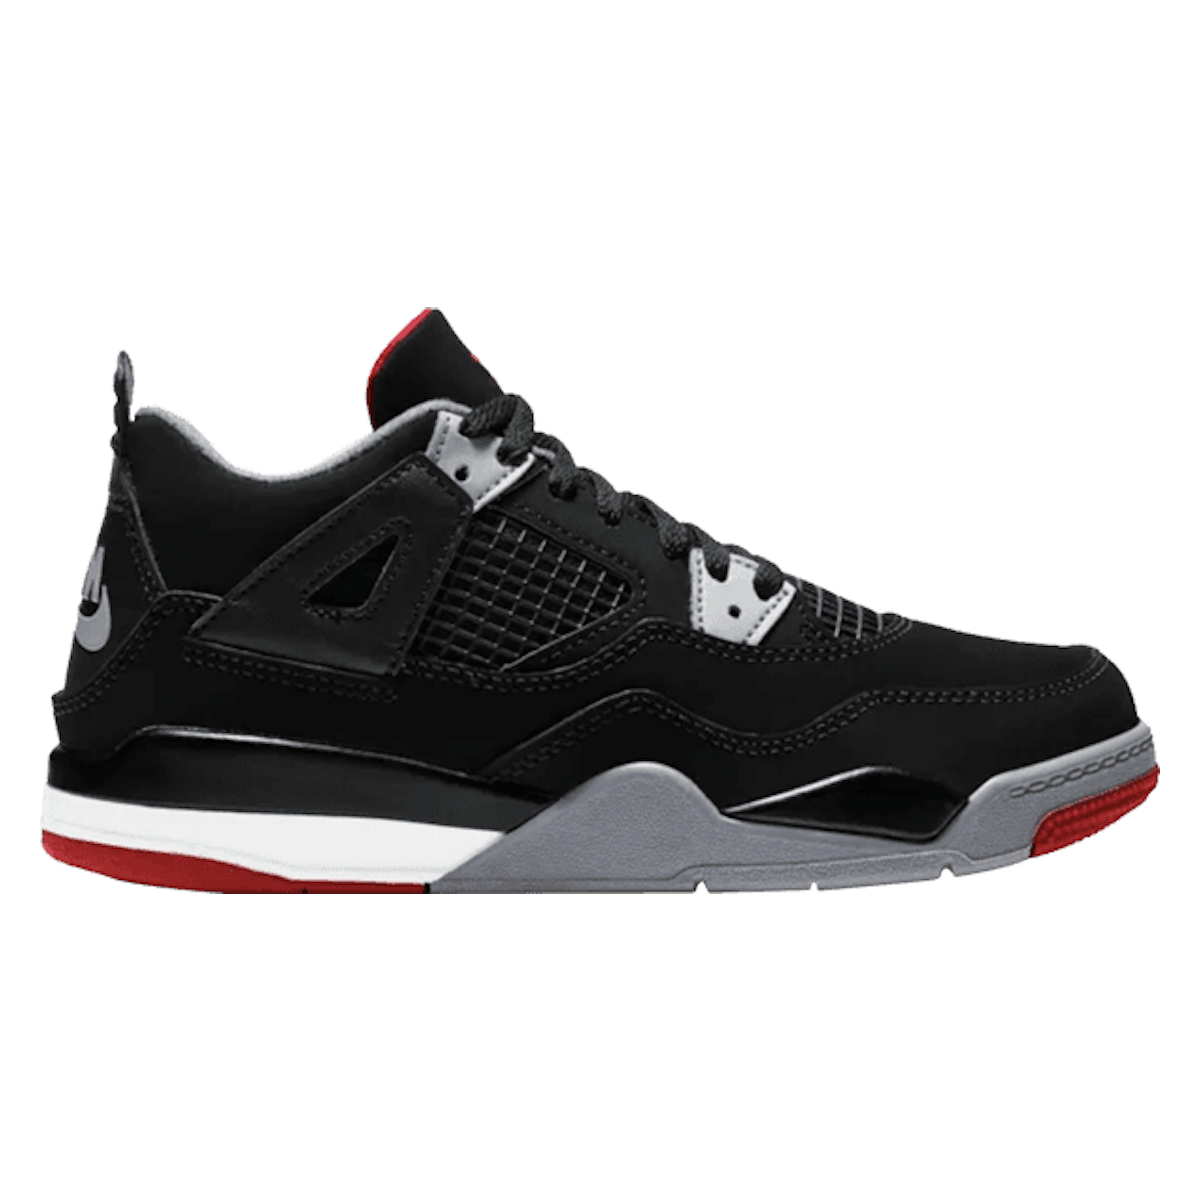 Air Jordan 4 Retro OG PS "Bred" 2019